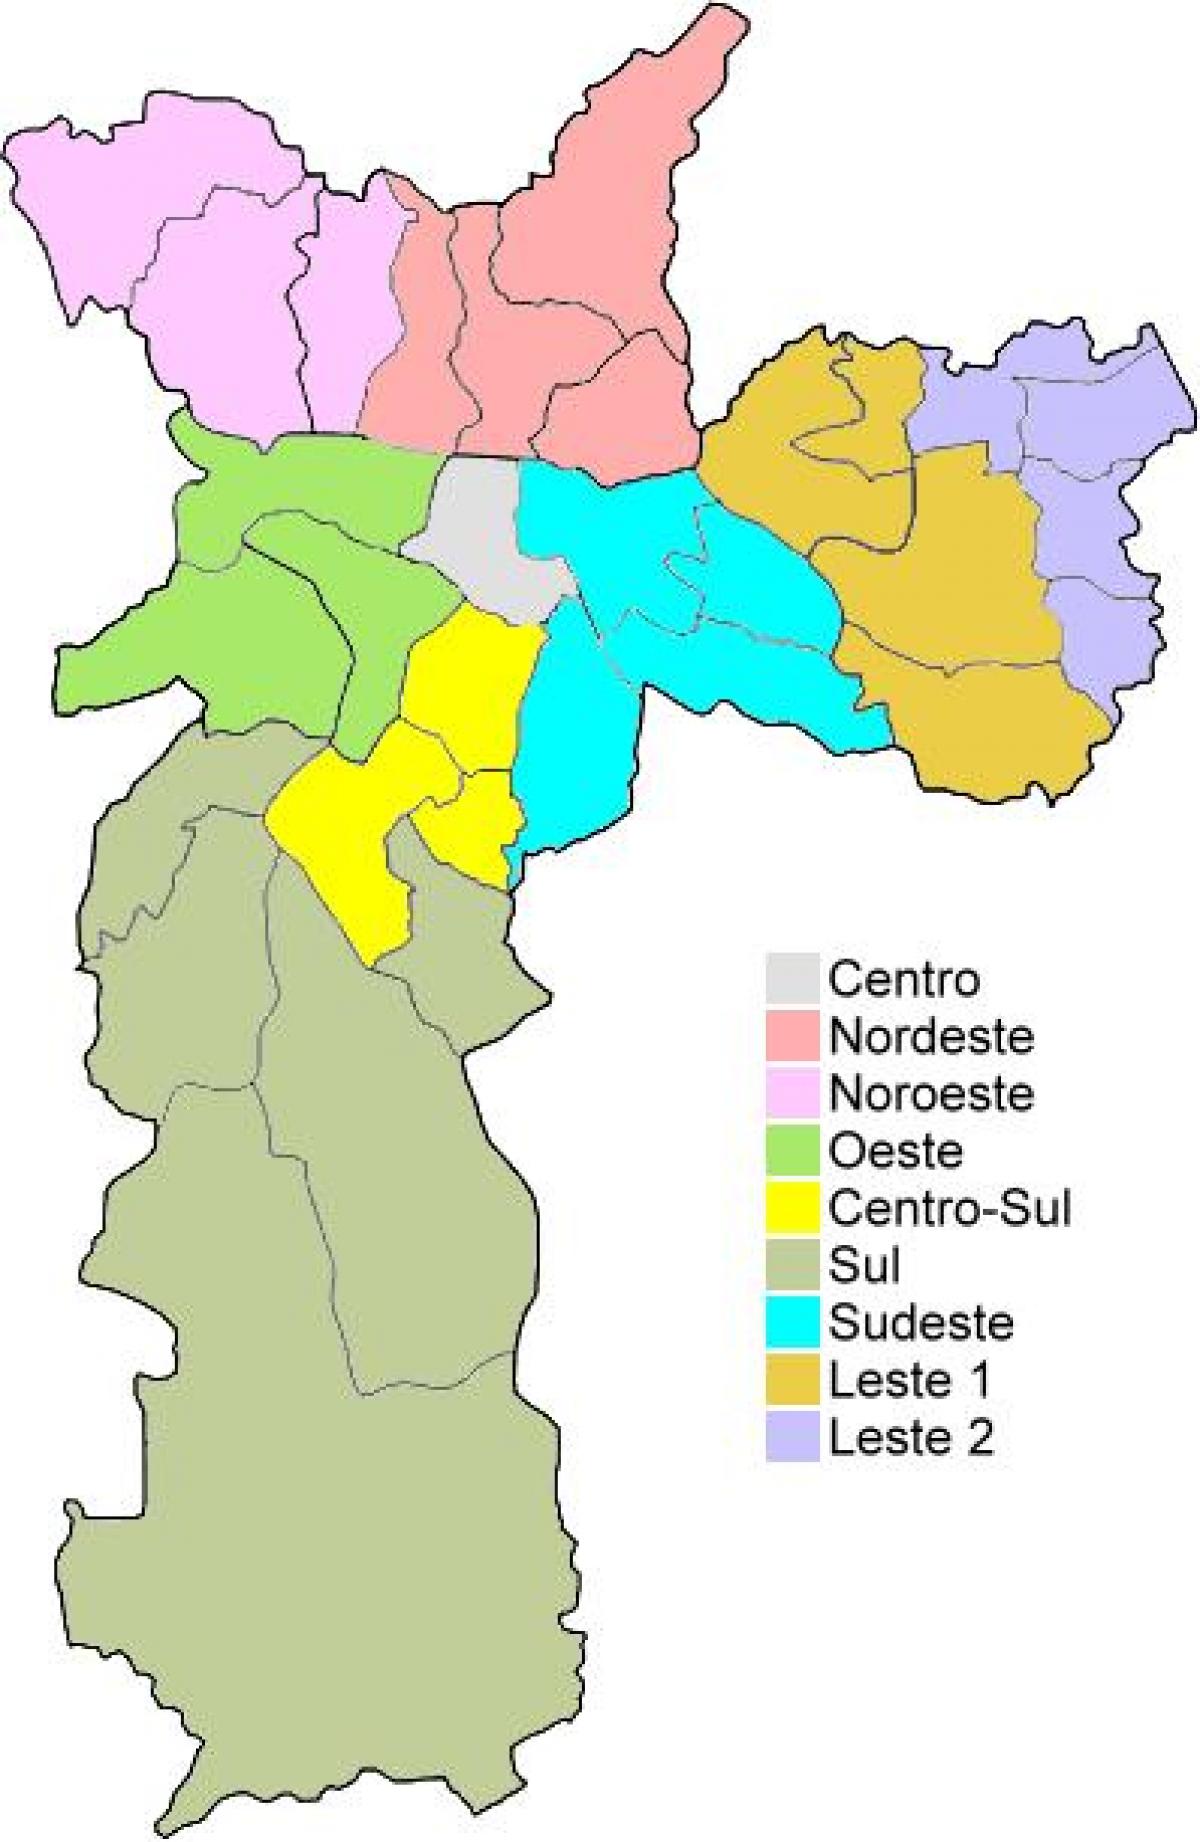 Mapa das regiões administrativas de São Paulo